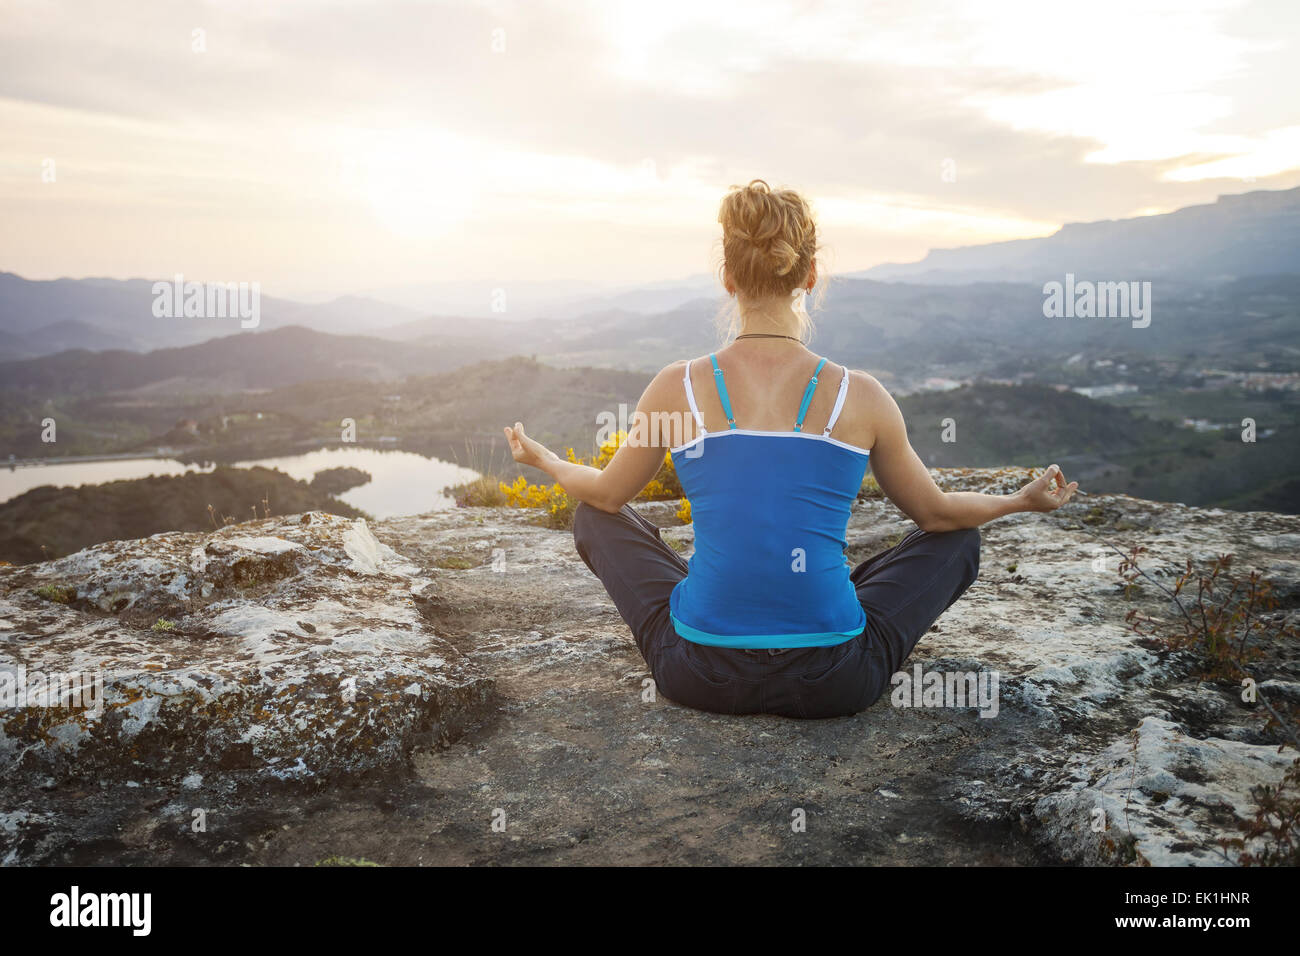 Junge Frau sitzt auf einem Felsen und Blick ins Tal genießen. Mädchen sitzt in Asana Position. Stockfoto